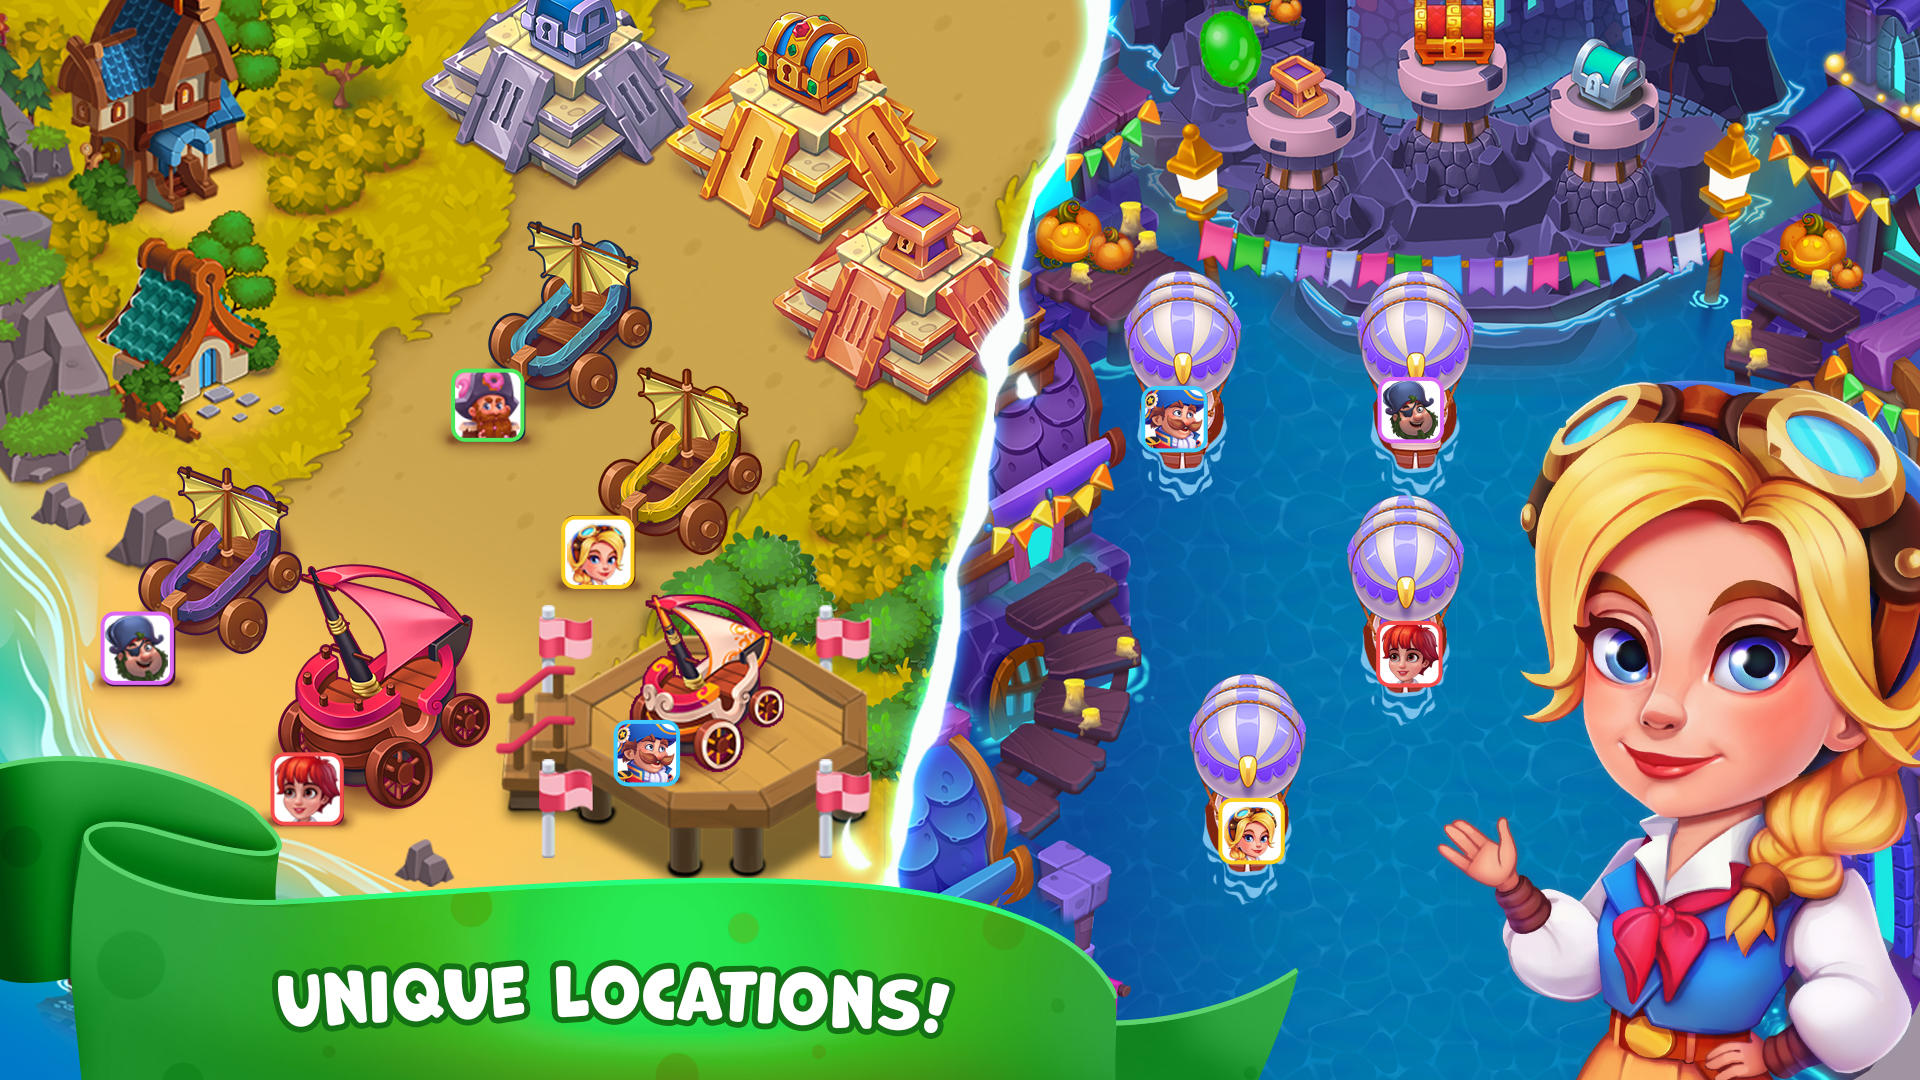 Pirate Treasures: Jewel & Gems screenshot game